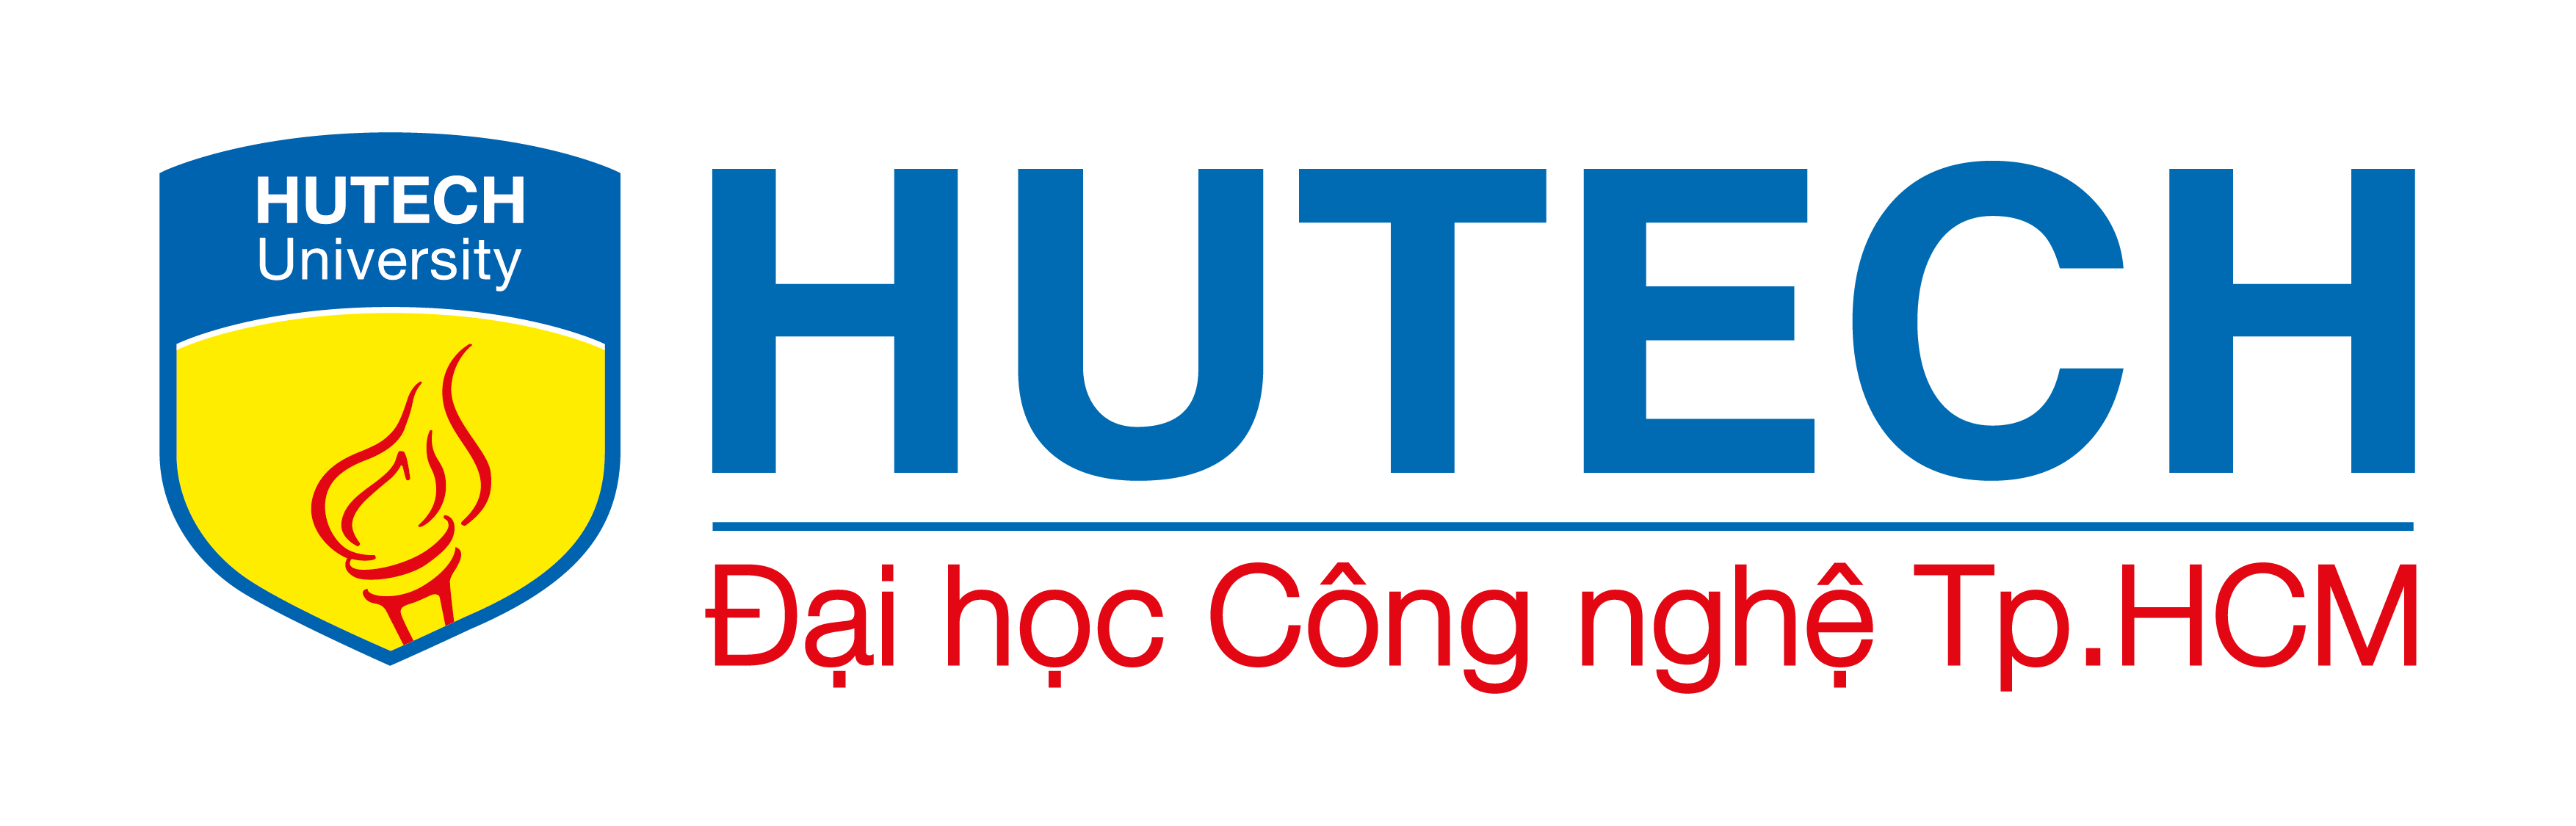 Ý nghĩa logo Đại học Công nghệ Tp.HCM (HUTECH) 27